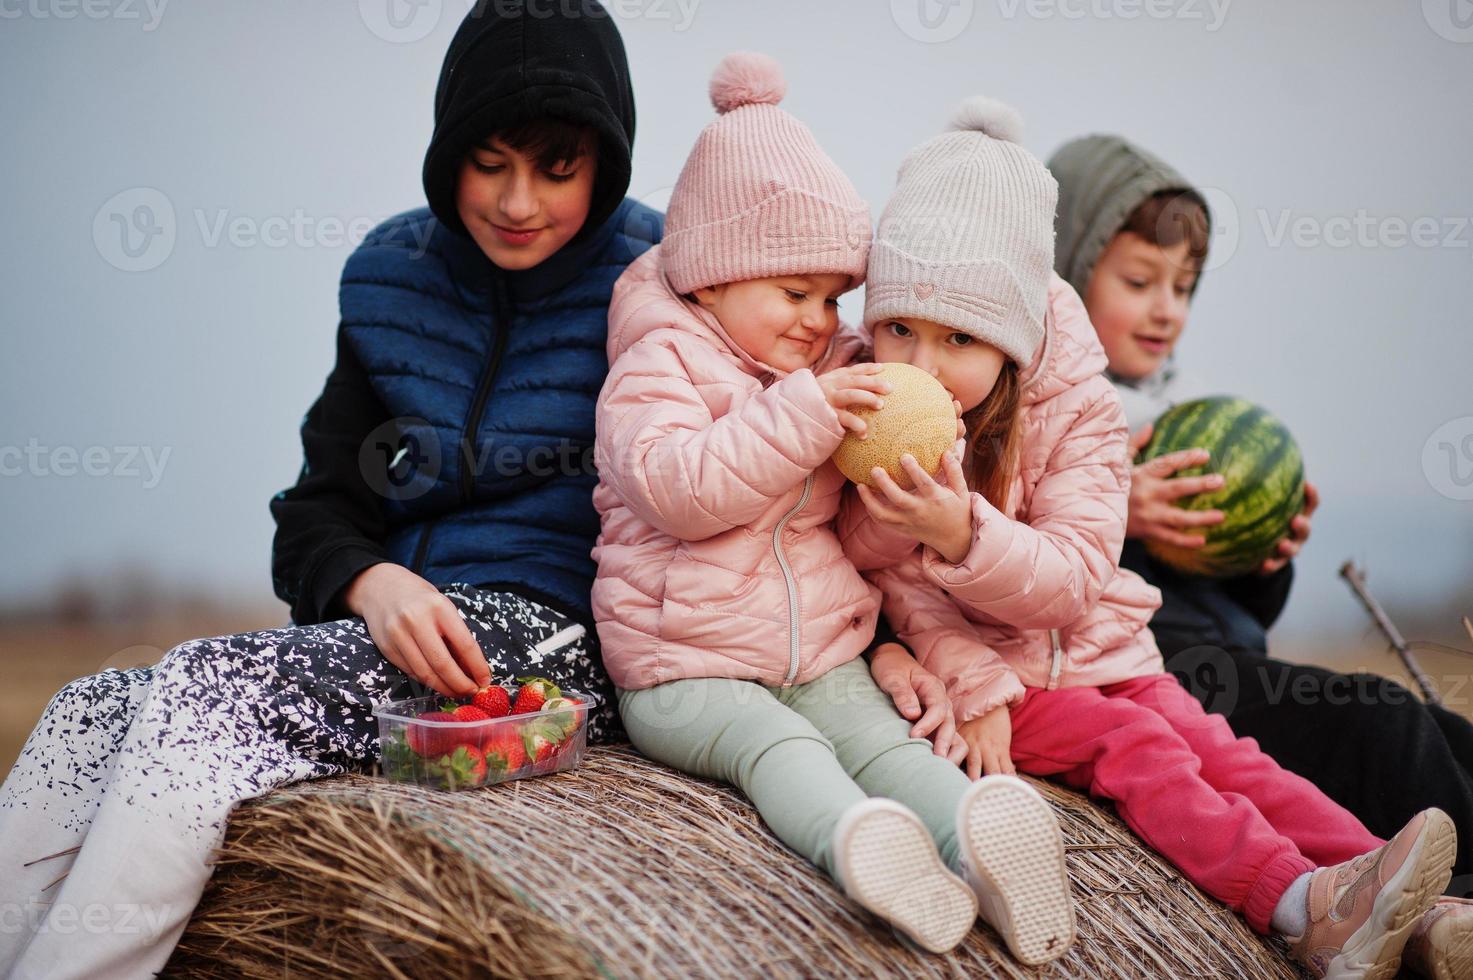 quatre enfants avec des fruits dans les mains assis sur haycock au champ. photo